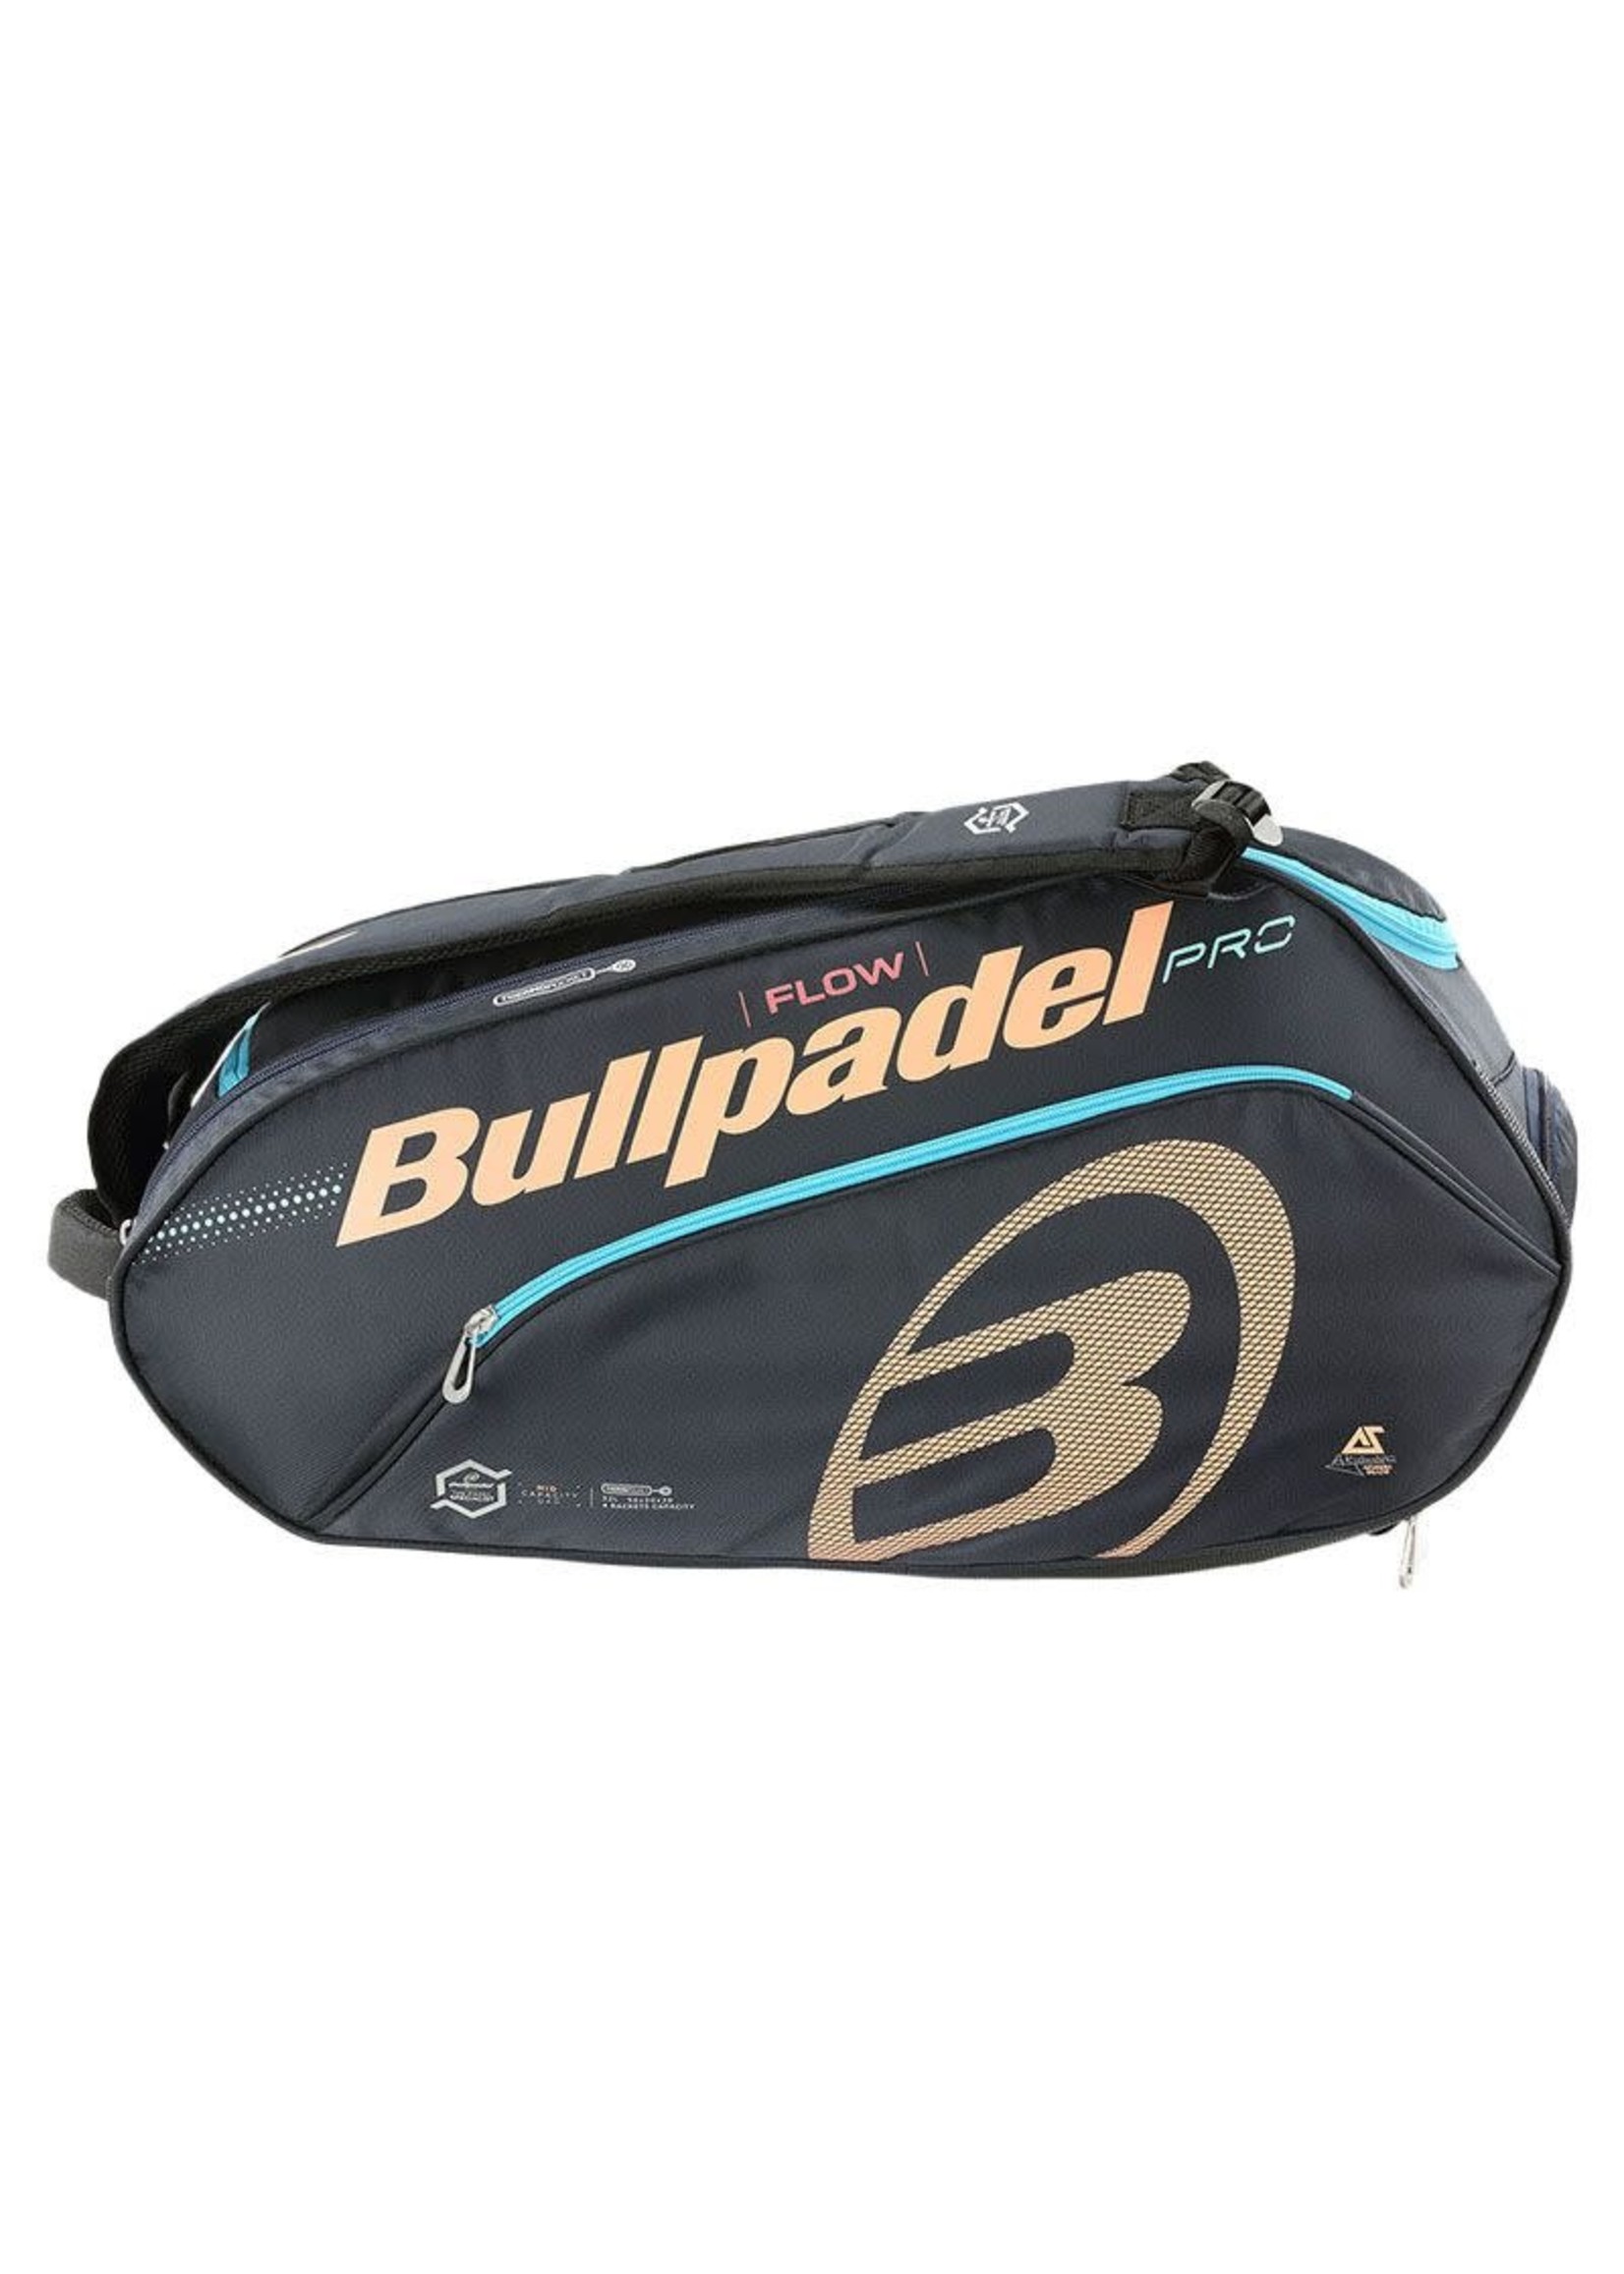 Bullpadel Flow bag